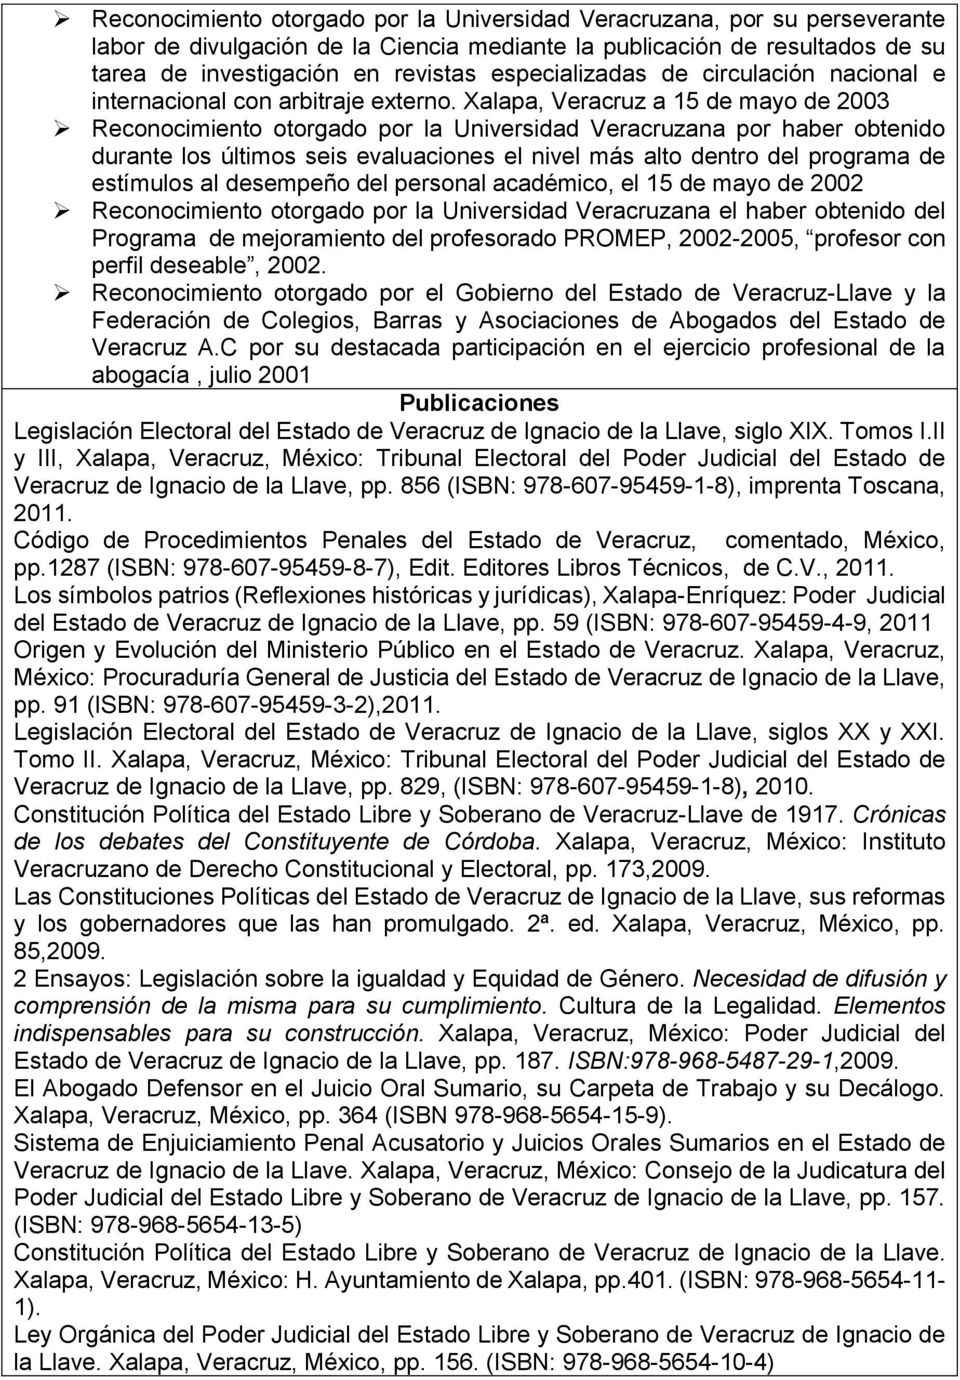 Xalapa, Veracruz a 15 de mayo de 2003 Reconocimiento otorgado por la Universidad Veracruzana por haber obtenido durante los últimos seis evaluaciones el nivel más alto dentro del programa de